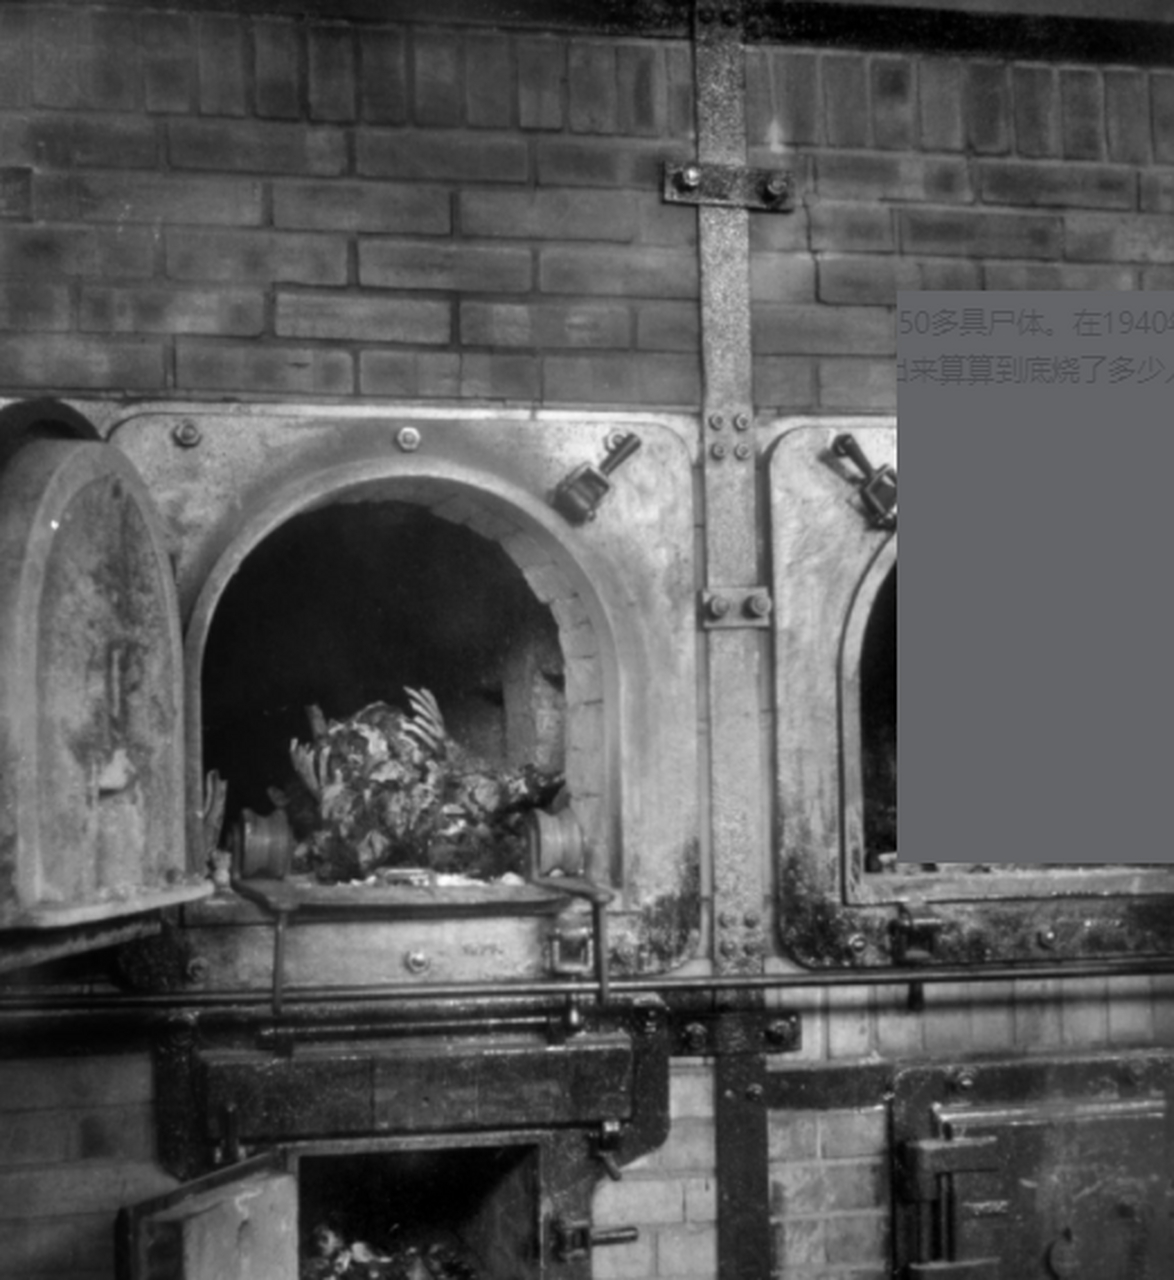 二战期间,布痕瓦尔集中营里的两个焚尸炉,左边焚尸炉里面还有没烧化的